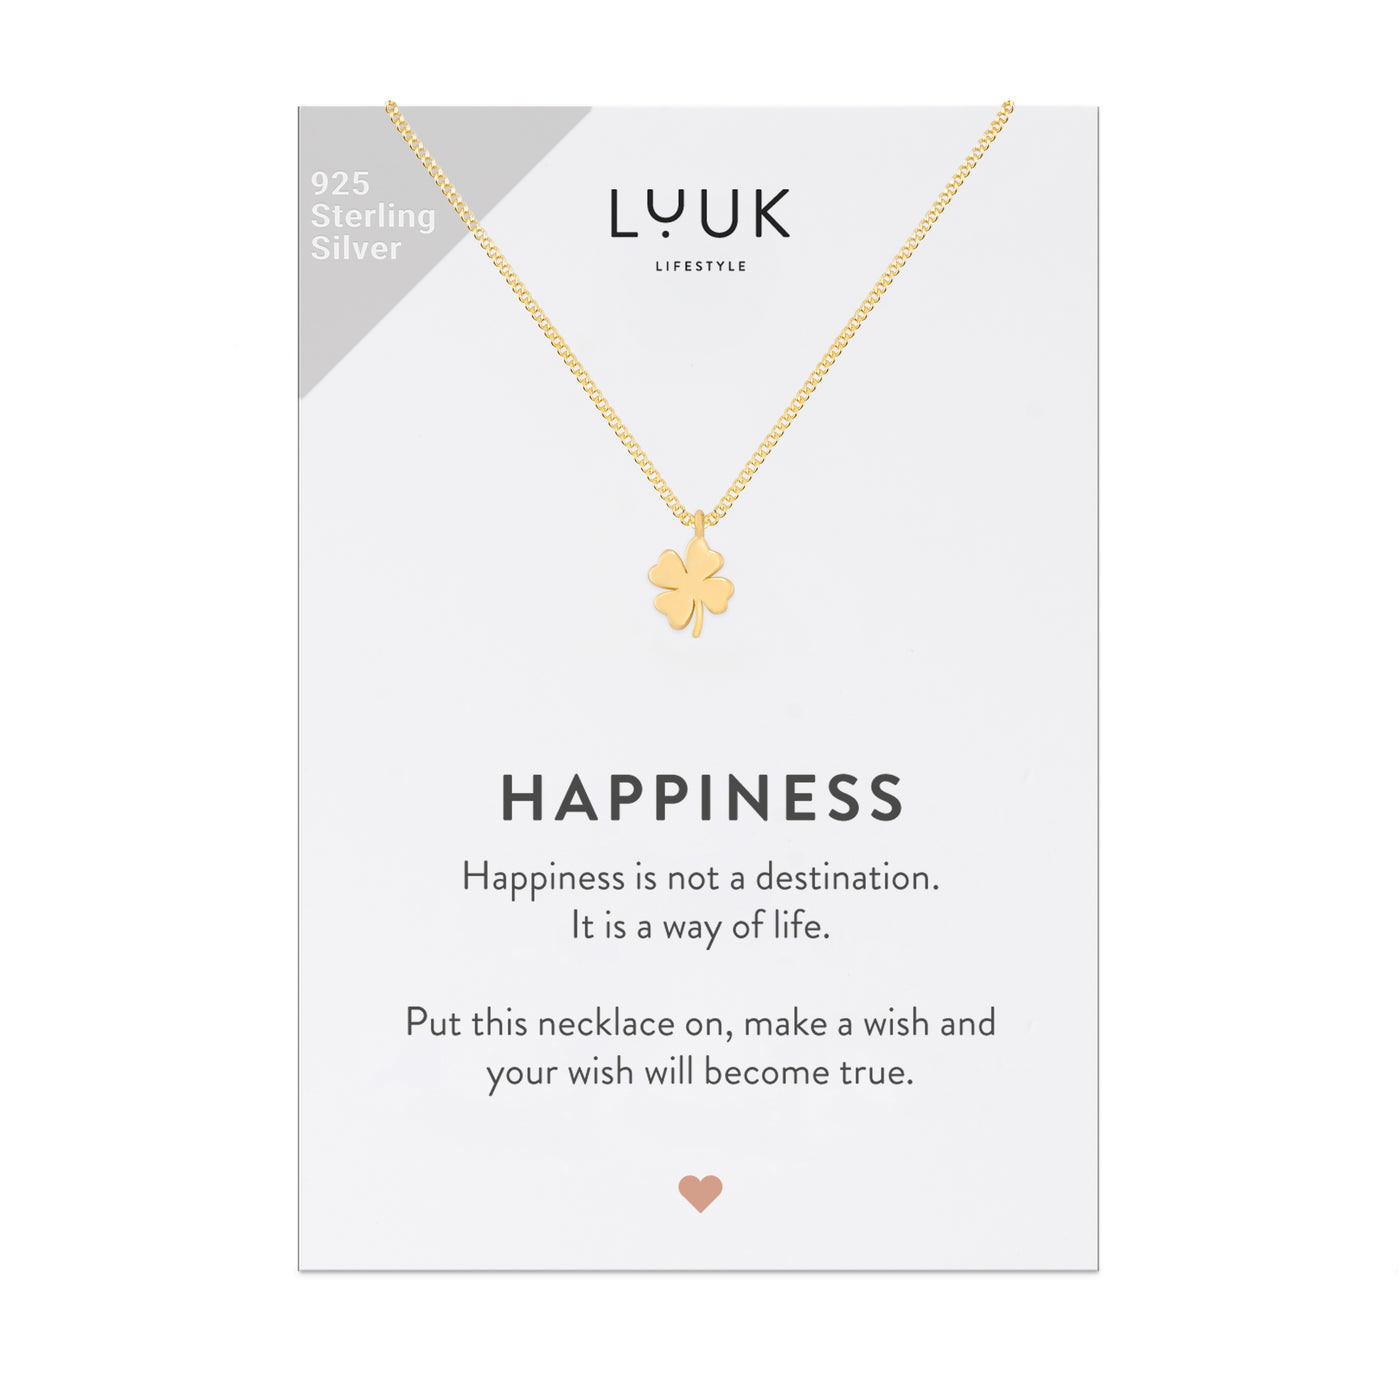 Gold Kette mit Kleeblatt Anhänger auf Happiness Spruchkarte von der Brand Luuk Lifestyle 